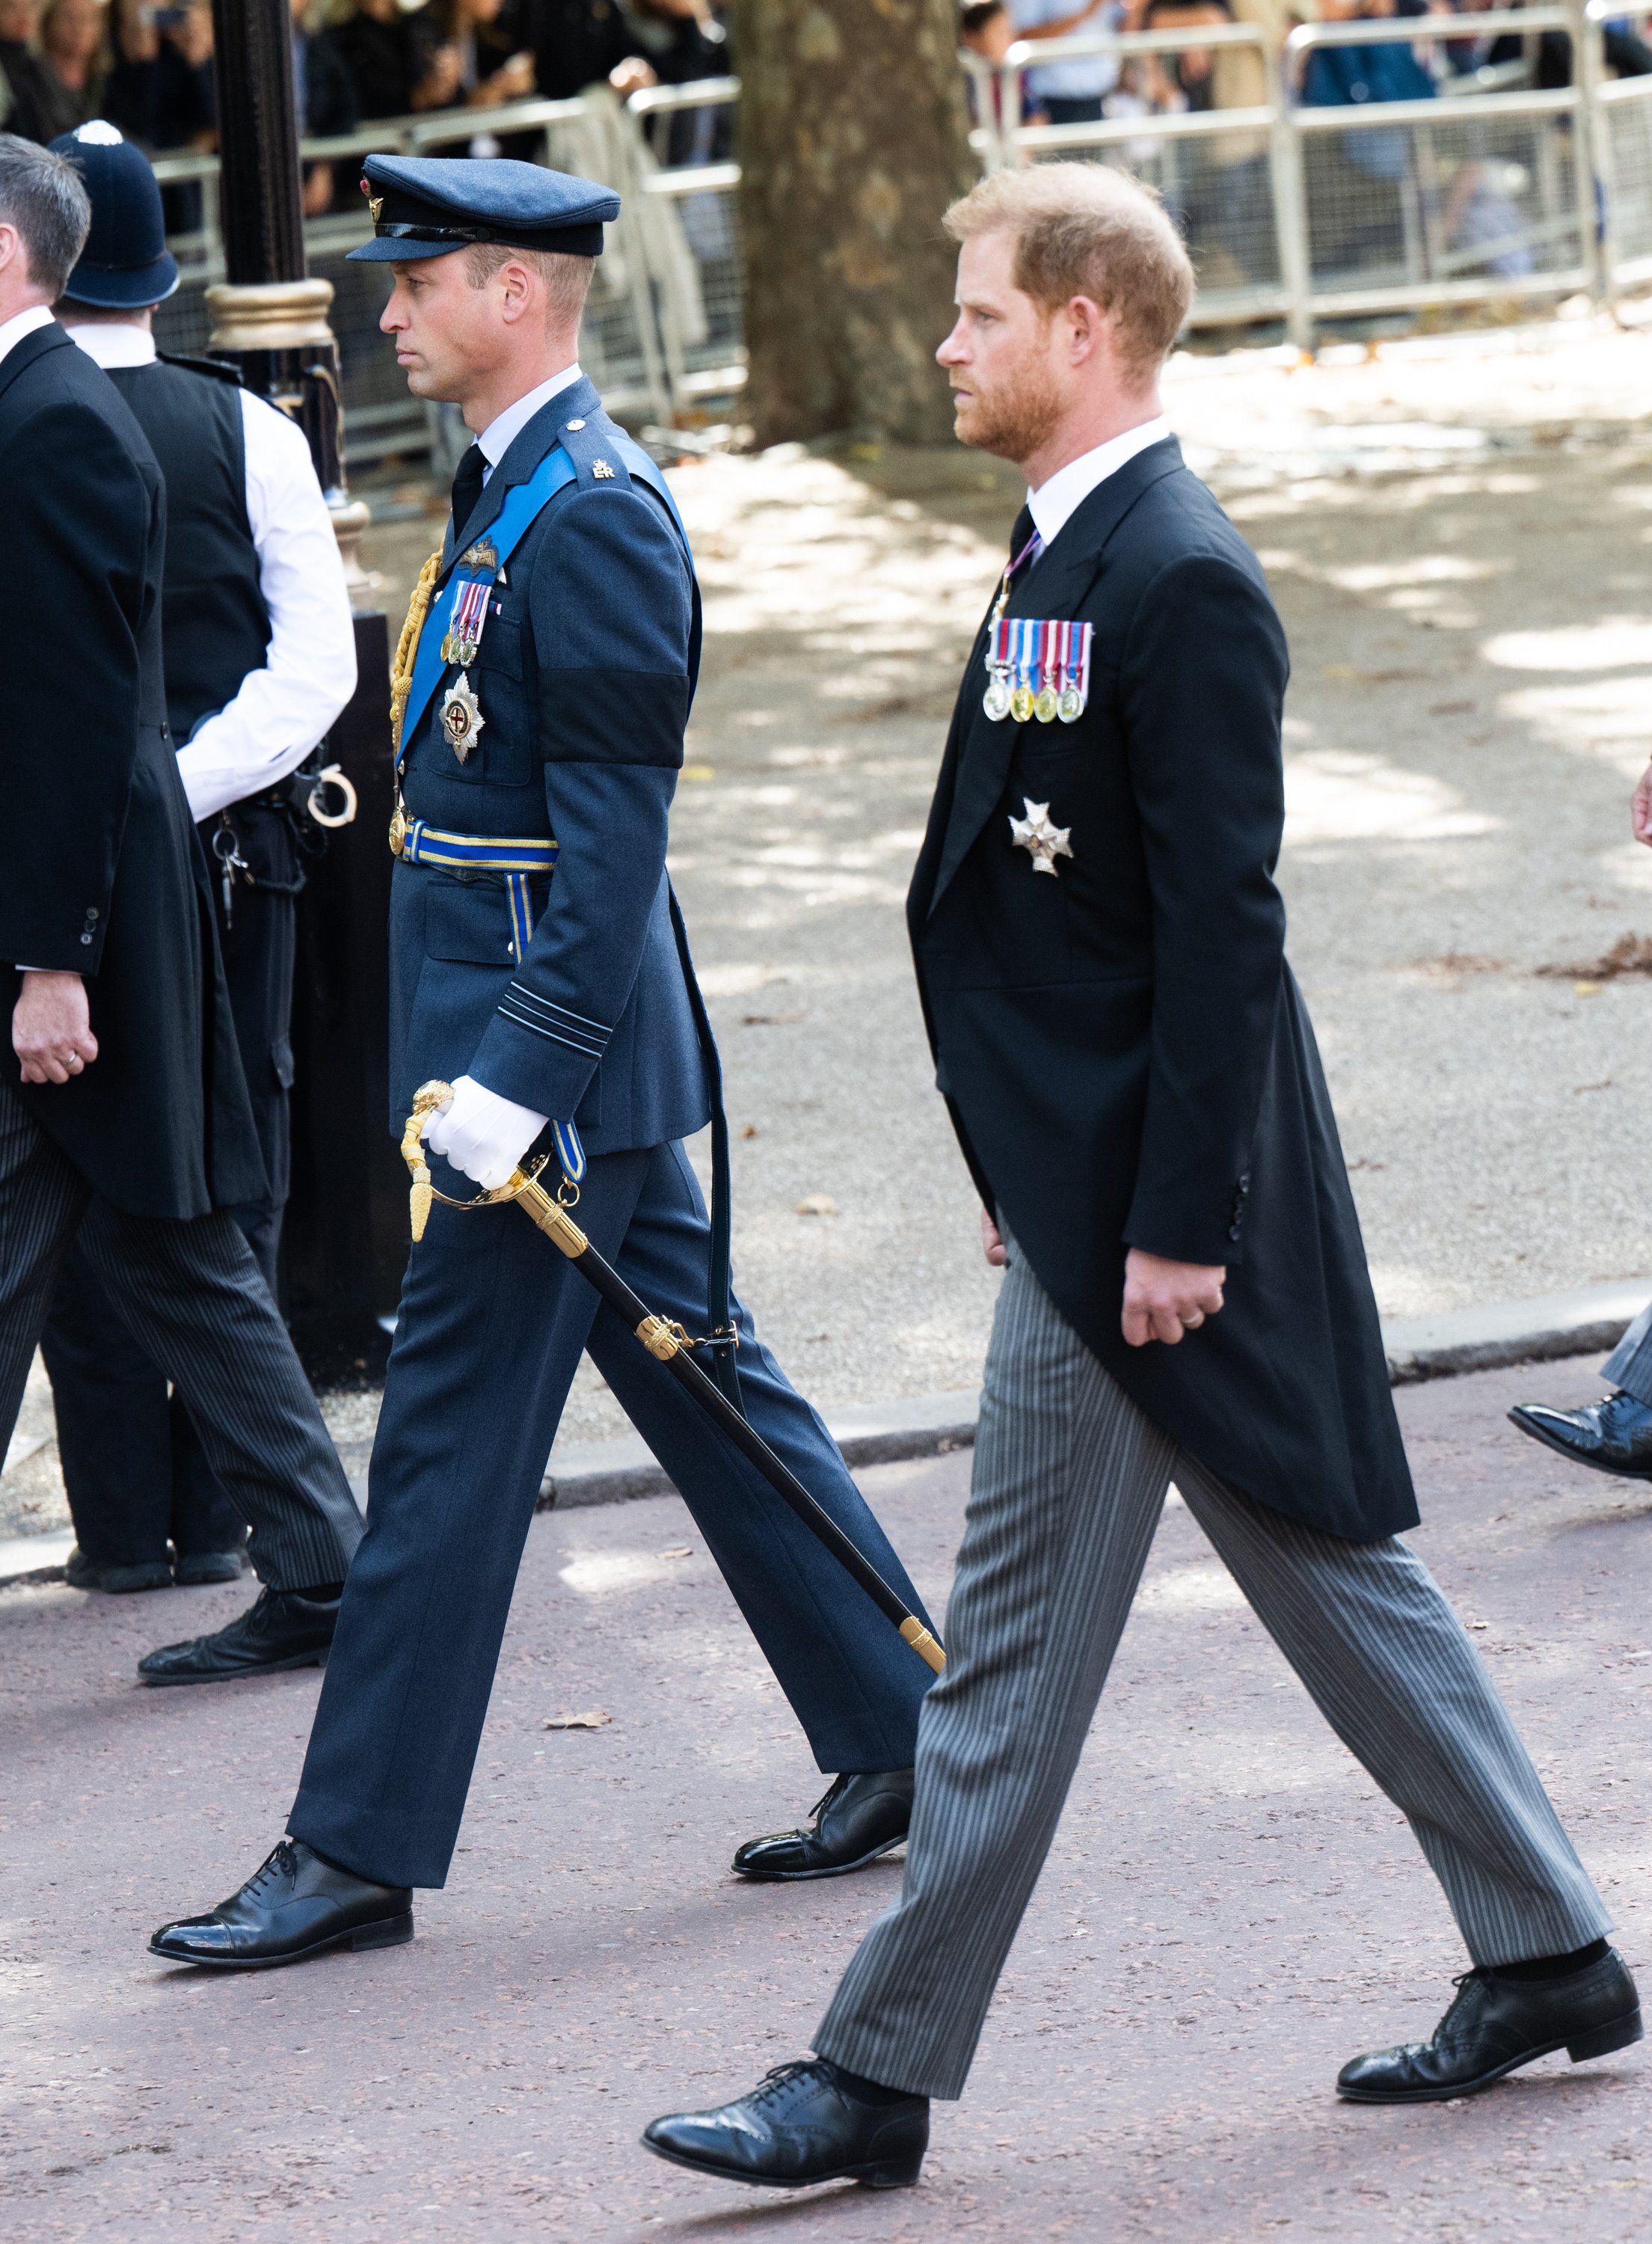 El príncipe William y el príncipe Harry caminan detrás del ataúd de la reina Elizabeth II el 14 de septiembre de 2022 en Londres, Inglaterra. | Foto: Getty Images